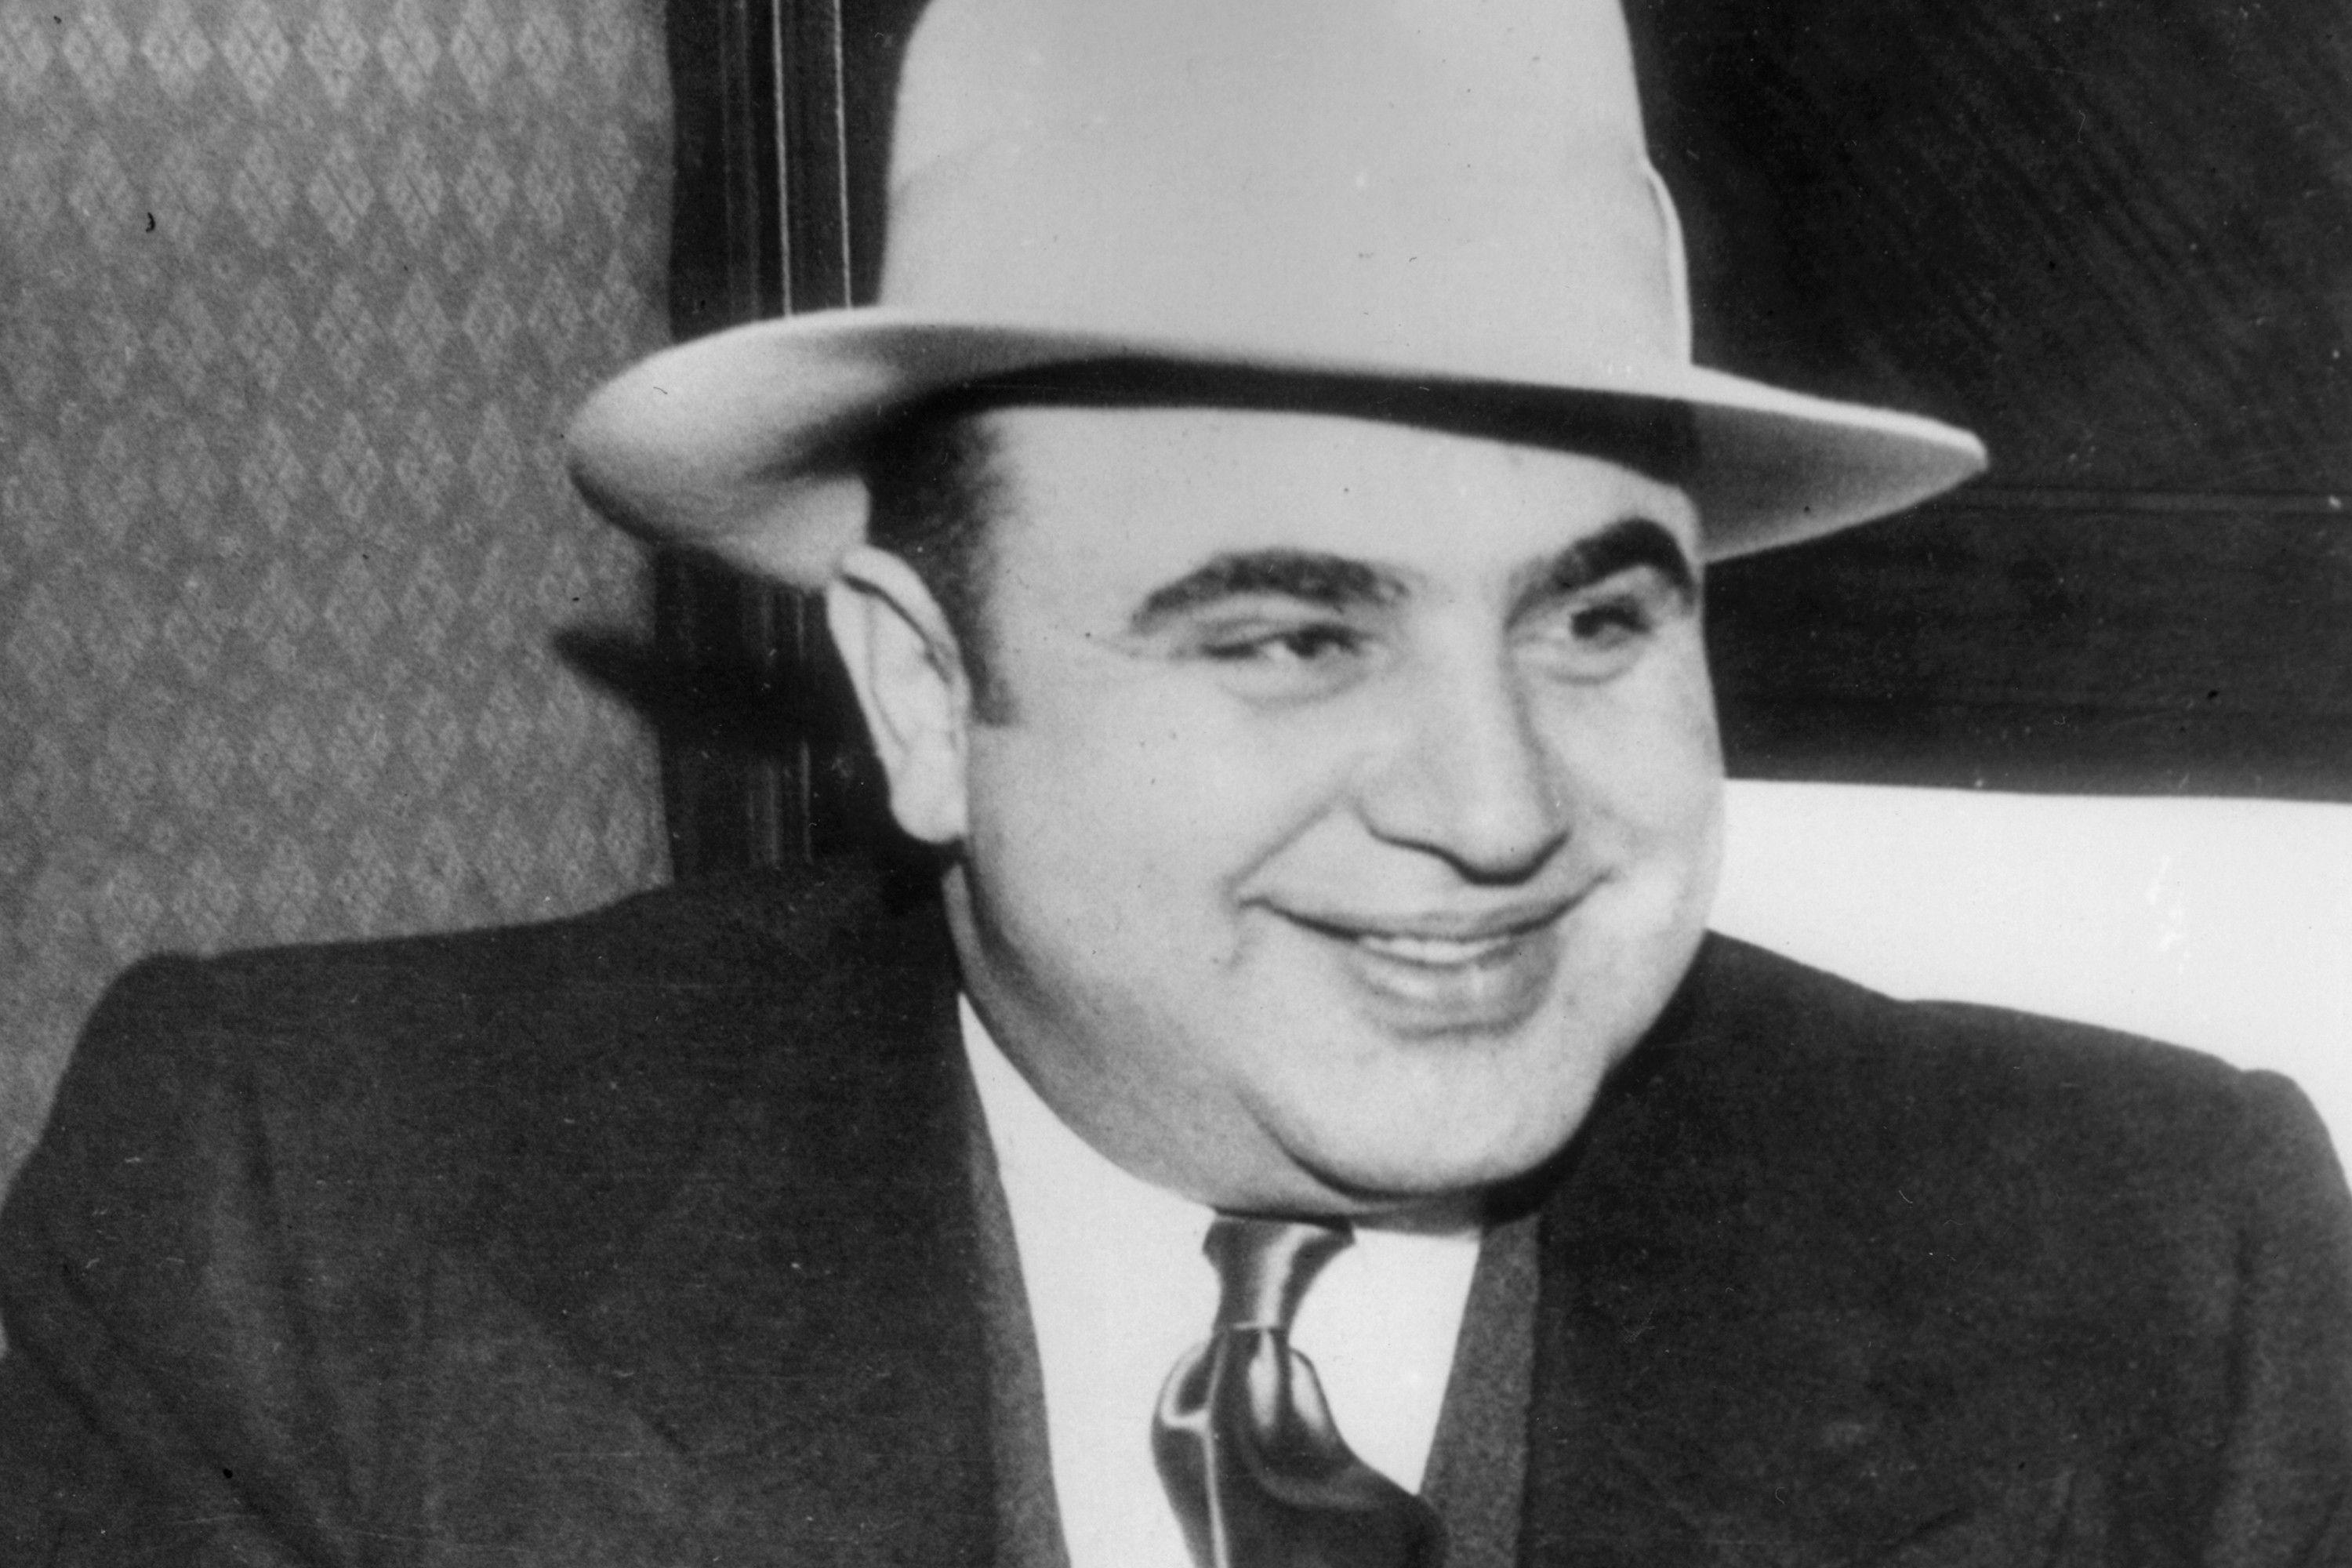 Famous Gangster Logo - Prison letter reveals Al Capone's soft side